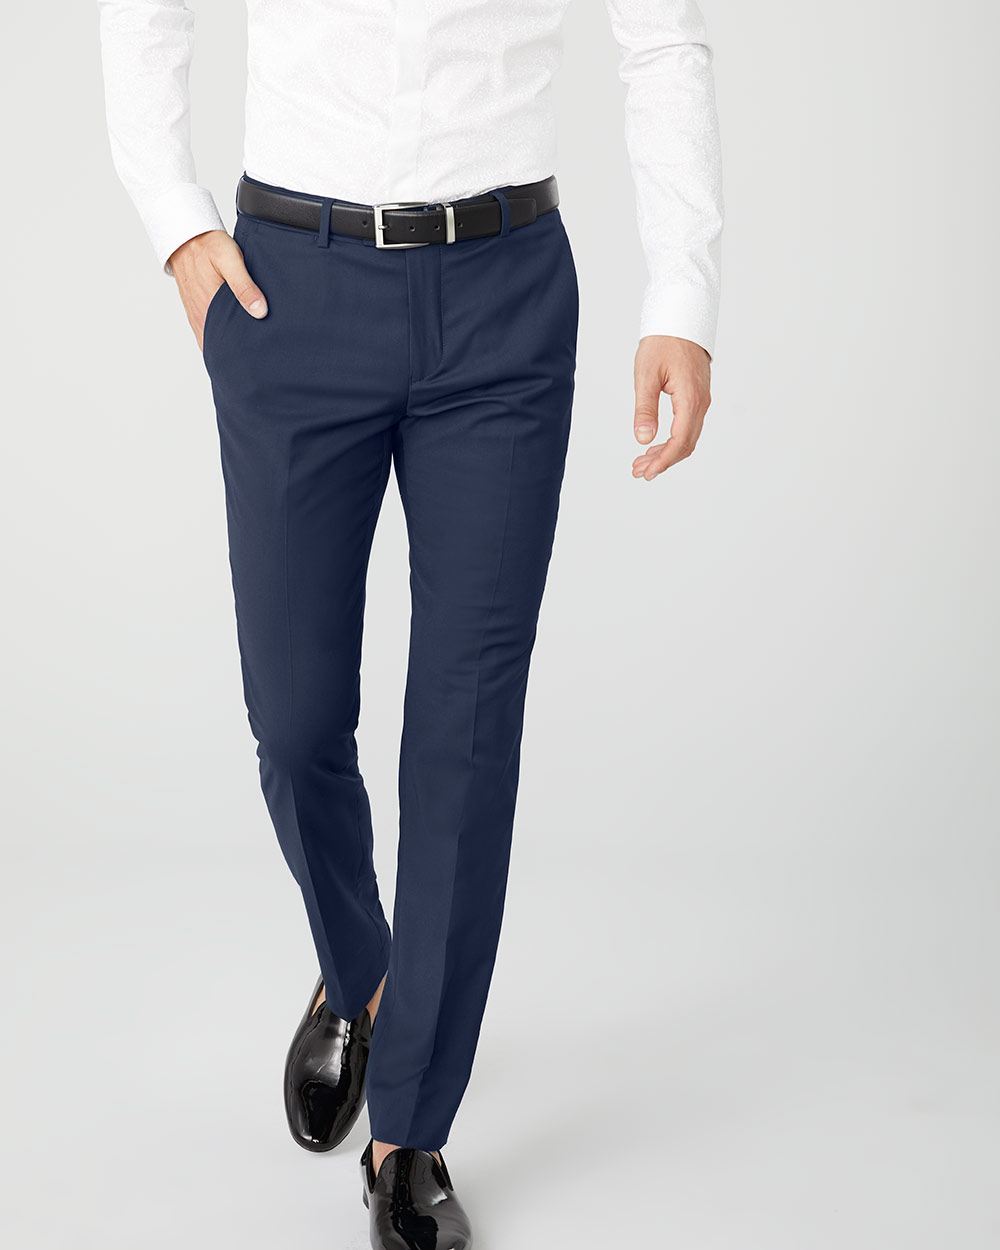 Slim fit navy blue suit pant | RW&CO.